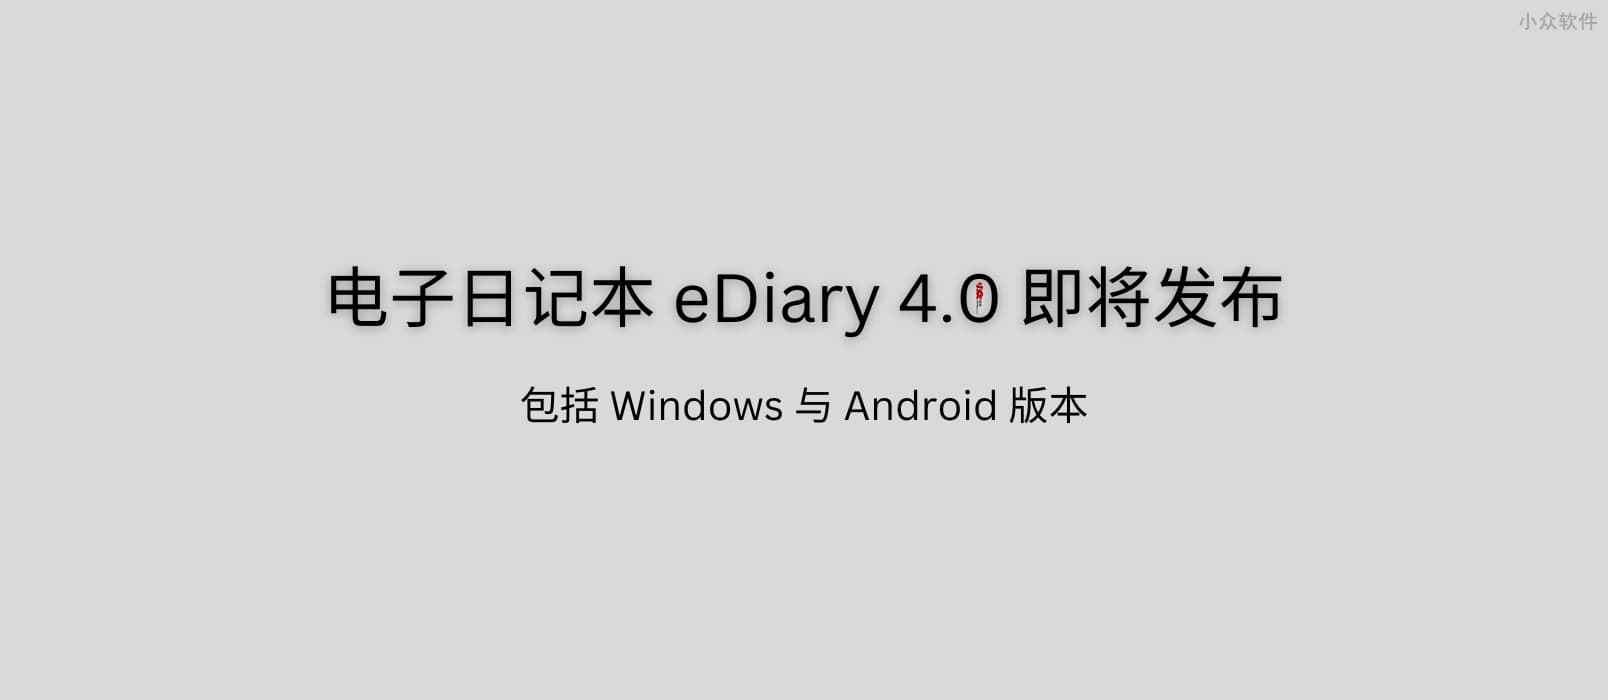 23 岁的电子日记本 eDiary 4.0 即将发布：我的白日梦